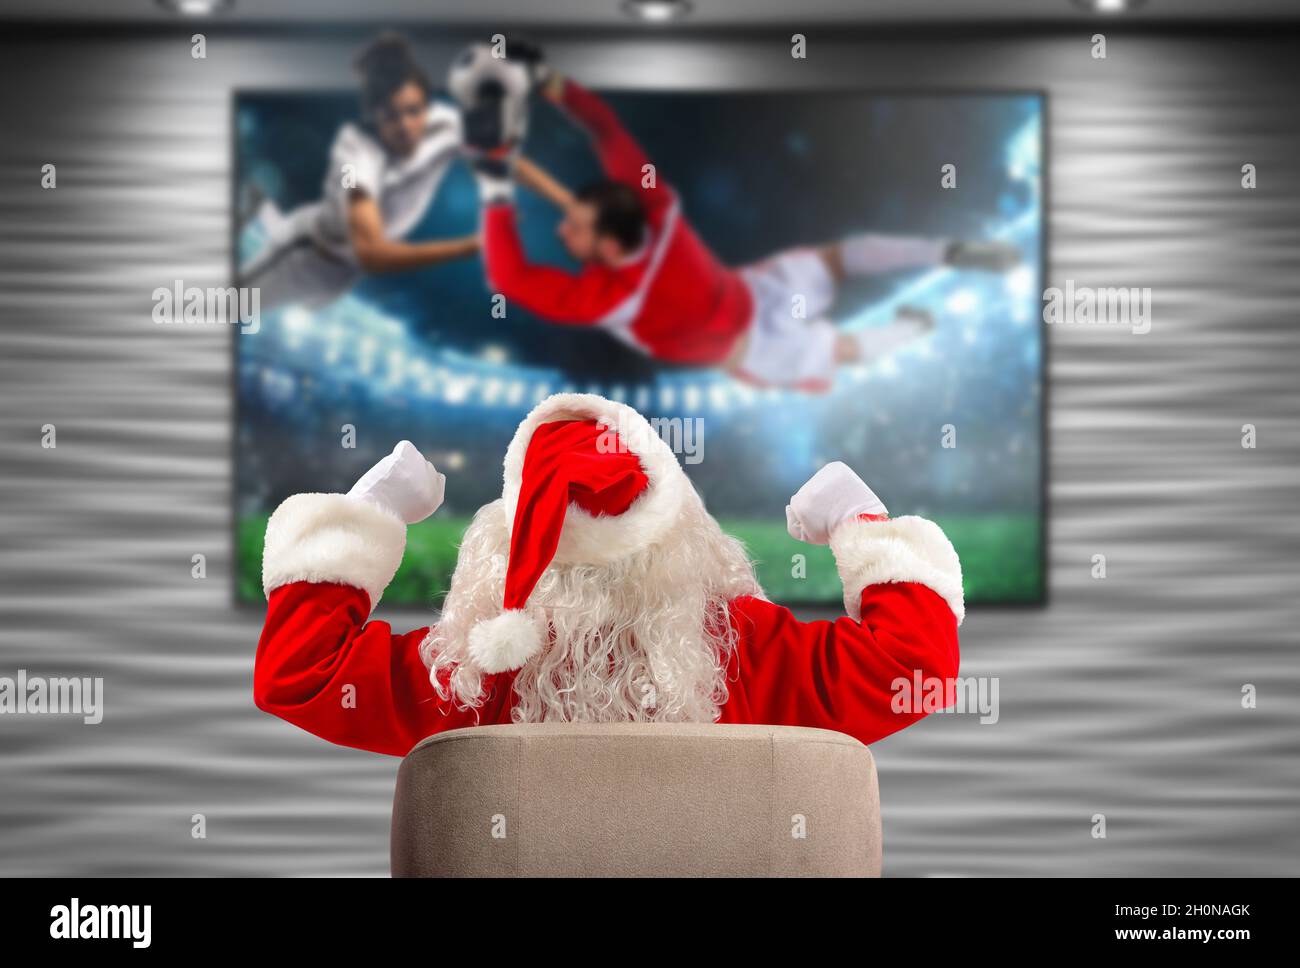 Alegre Santa Claus, fan del fútbol, mira un juego en la televisión Foto de stock